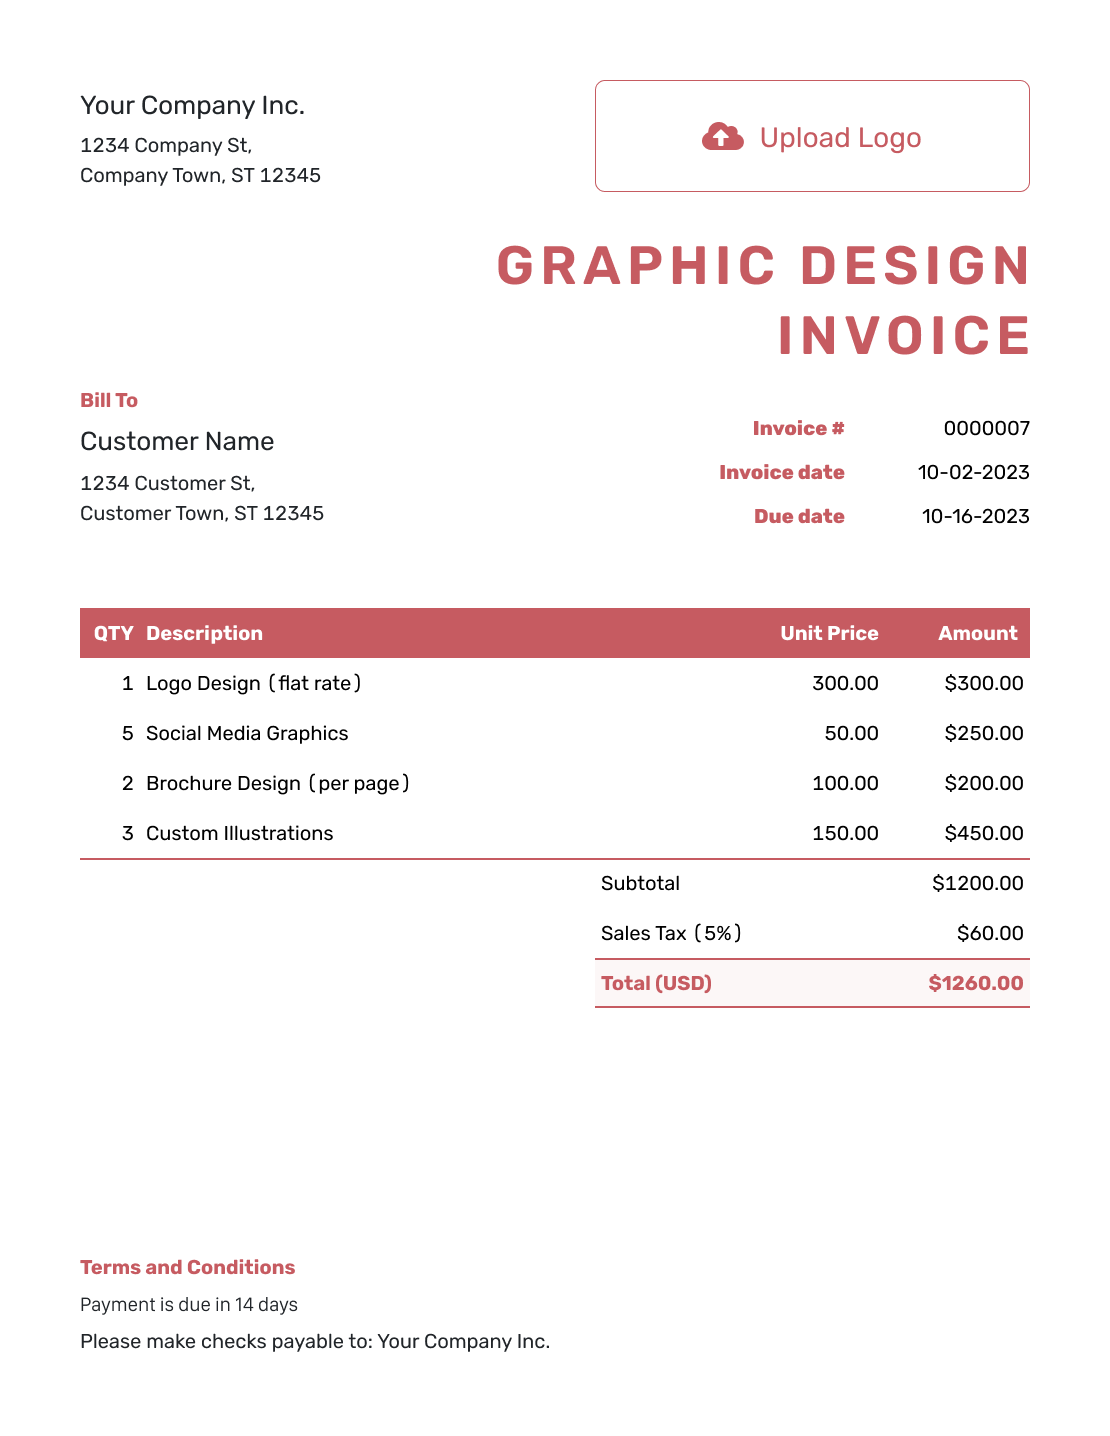 Itemized Graphic Design Invoice Template